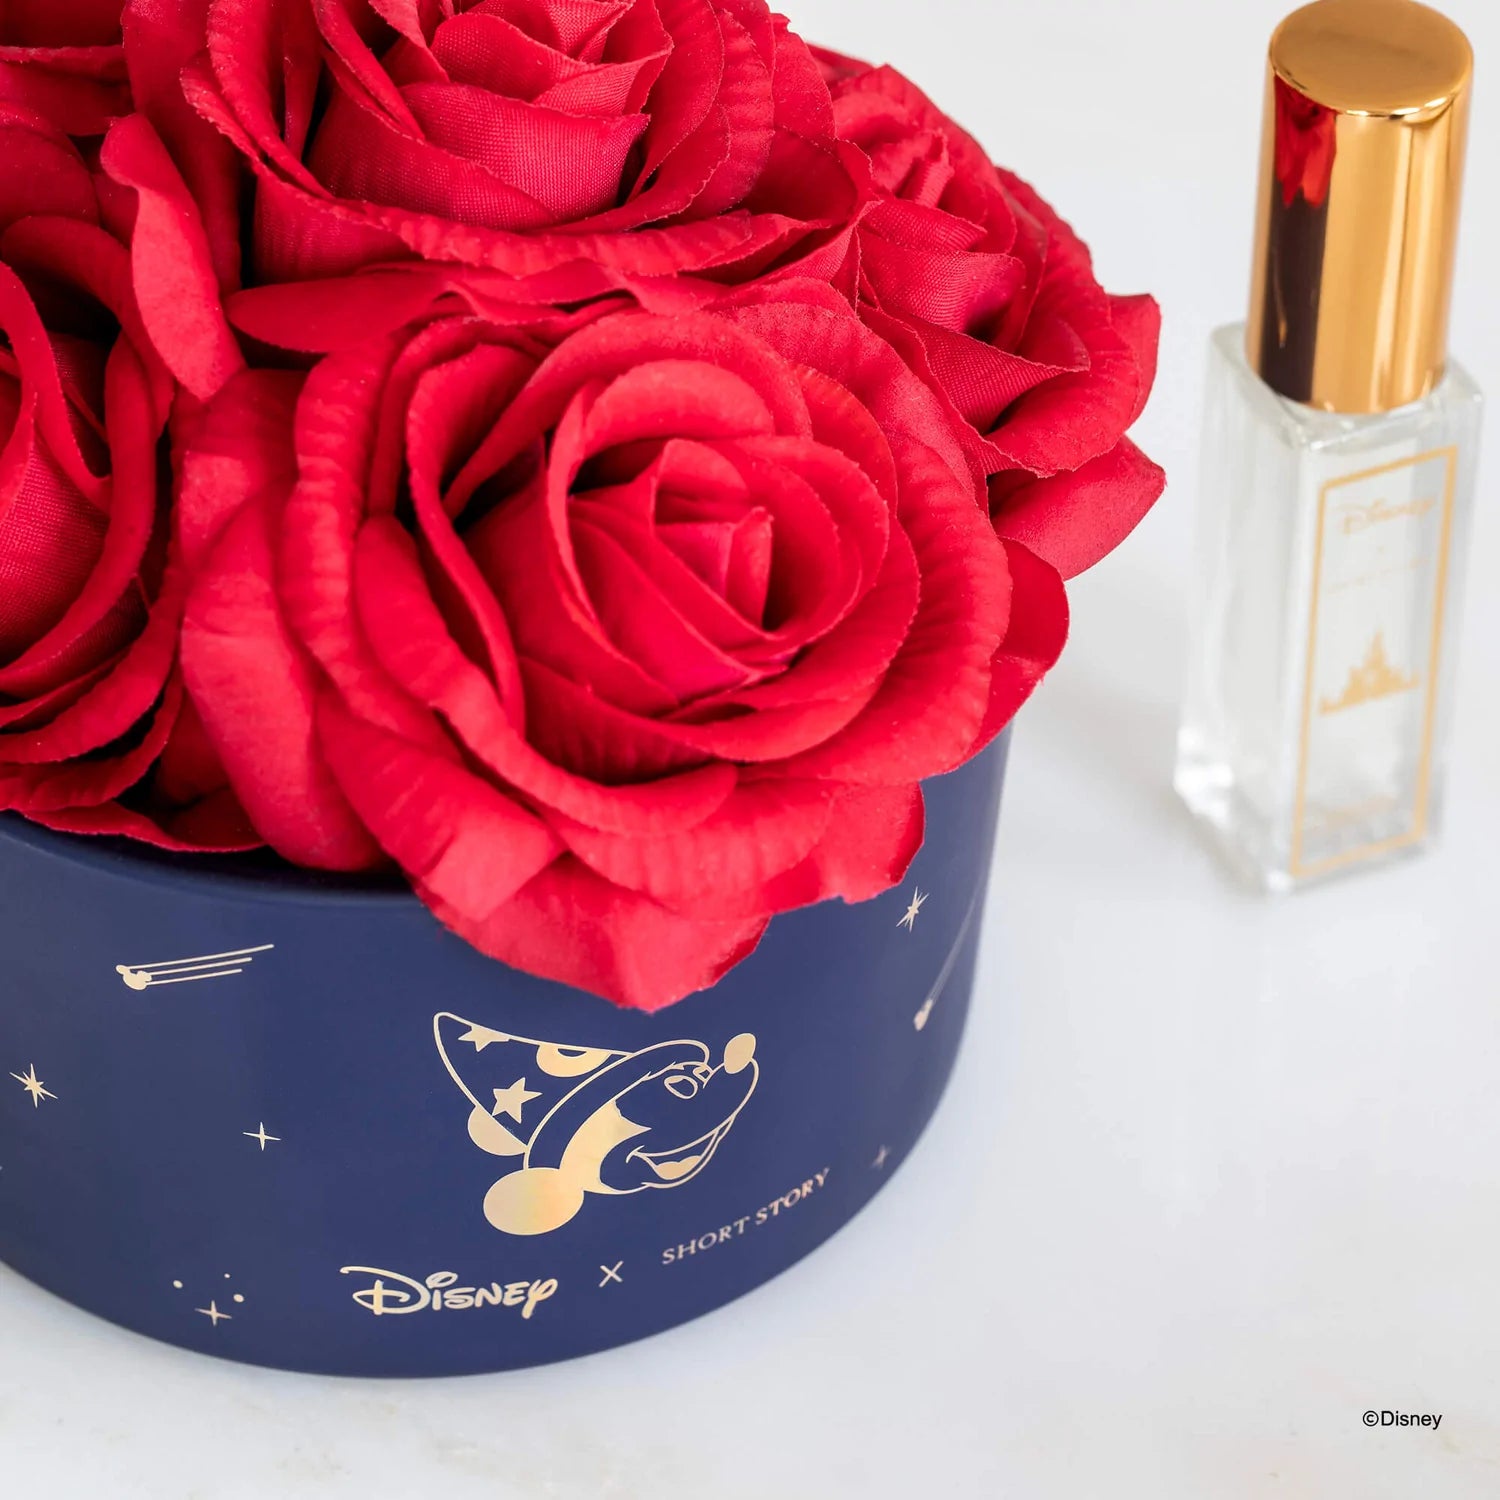 Short Story - Disney Diffuser Floral Bouquet Fantasia